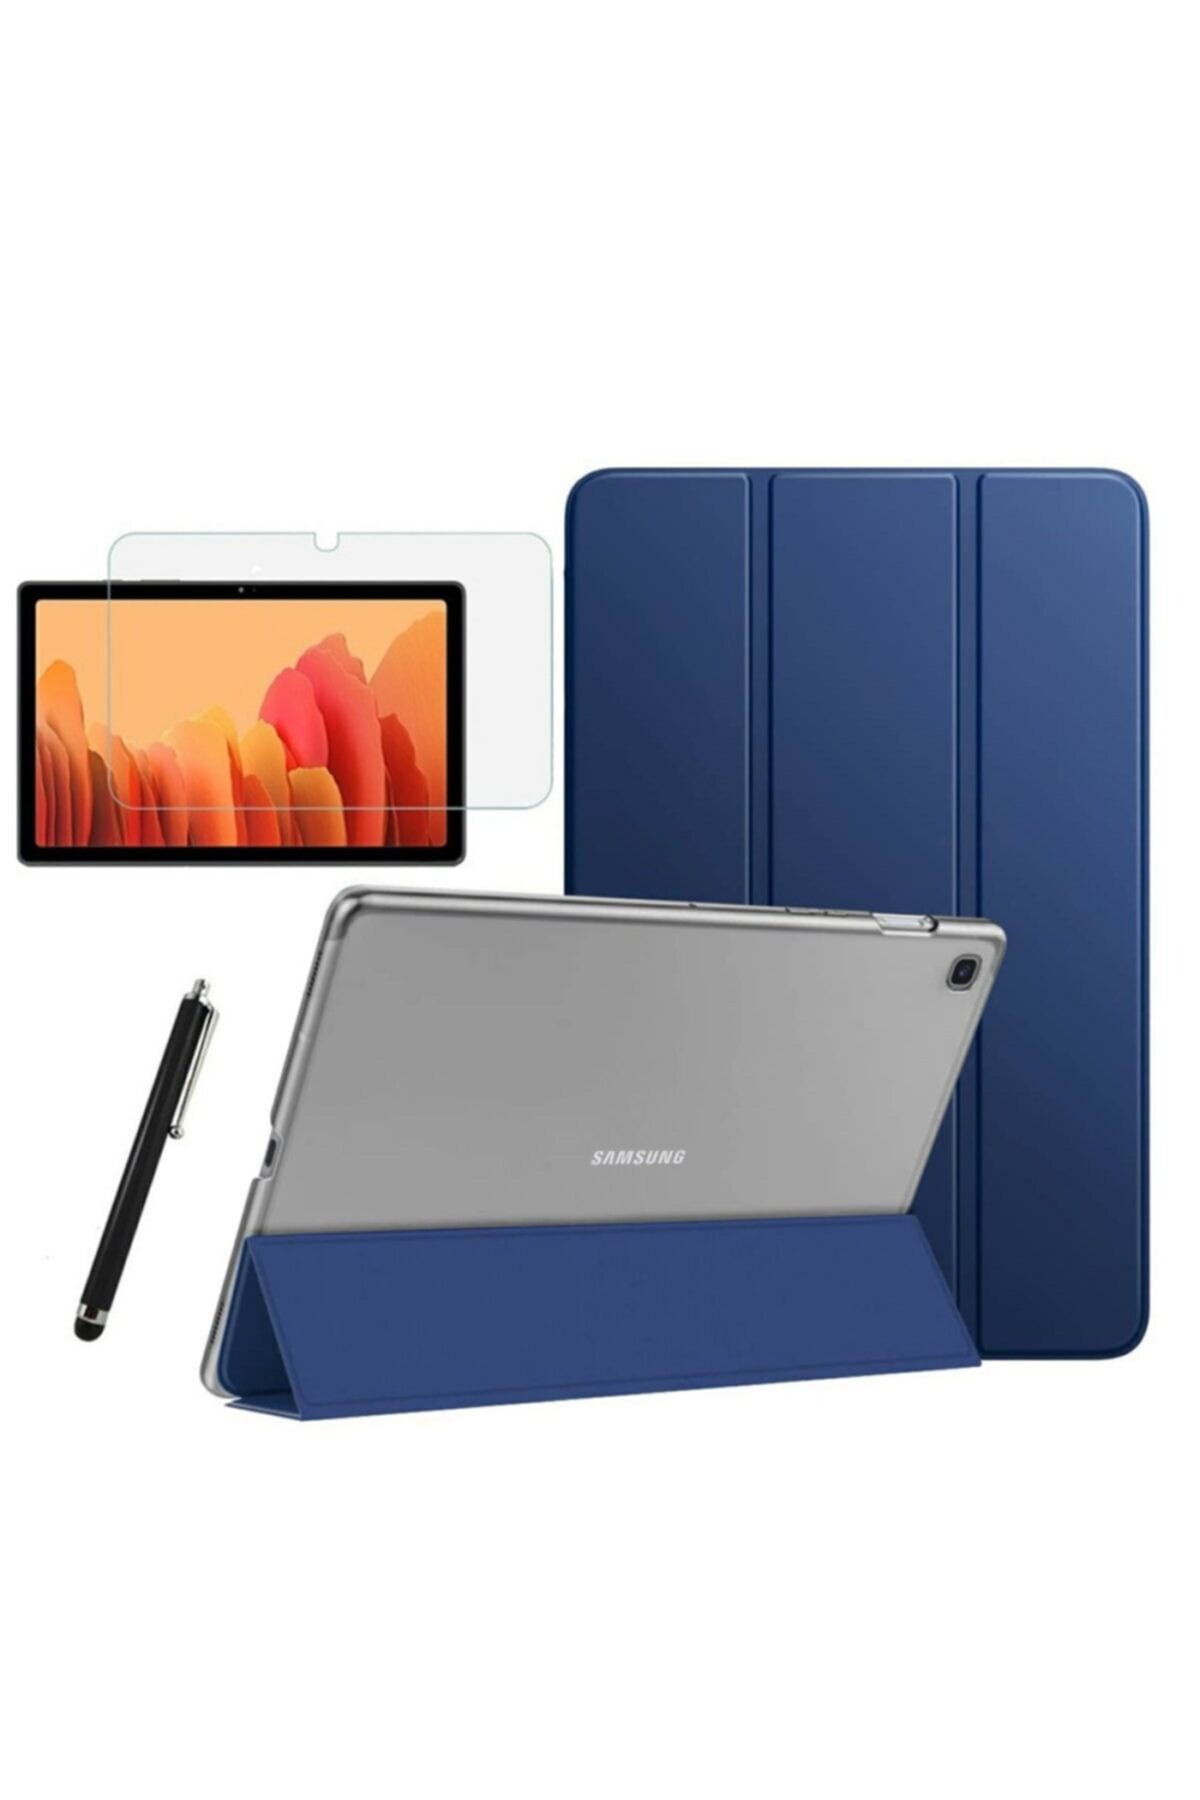 Fibaks Samsung Galaxy Tab S6 Lite Uyumlu Sm P610 P617 Smart Kapak Tablet Kılıfı + Ekran Koruyucu + Kalem